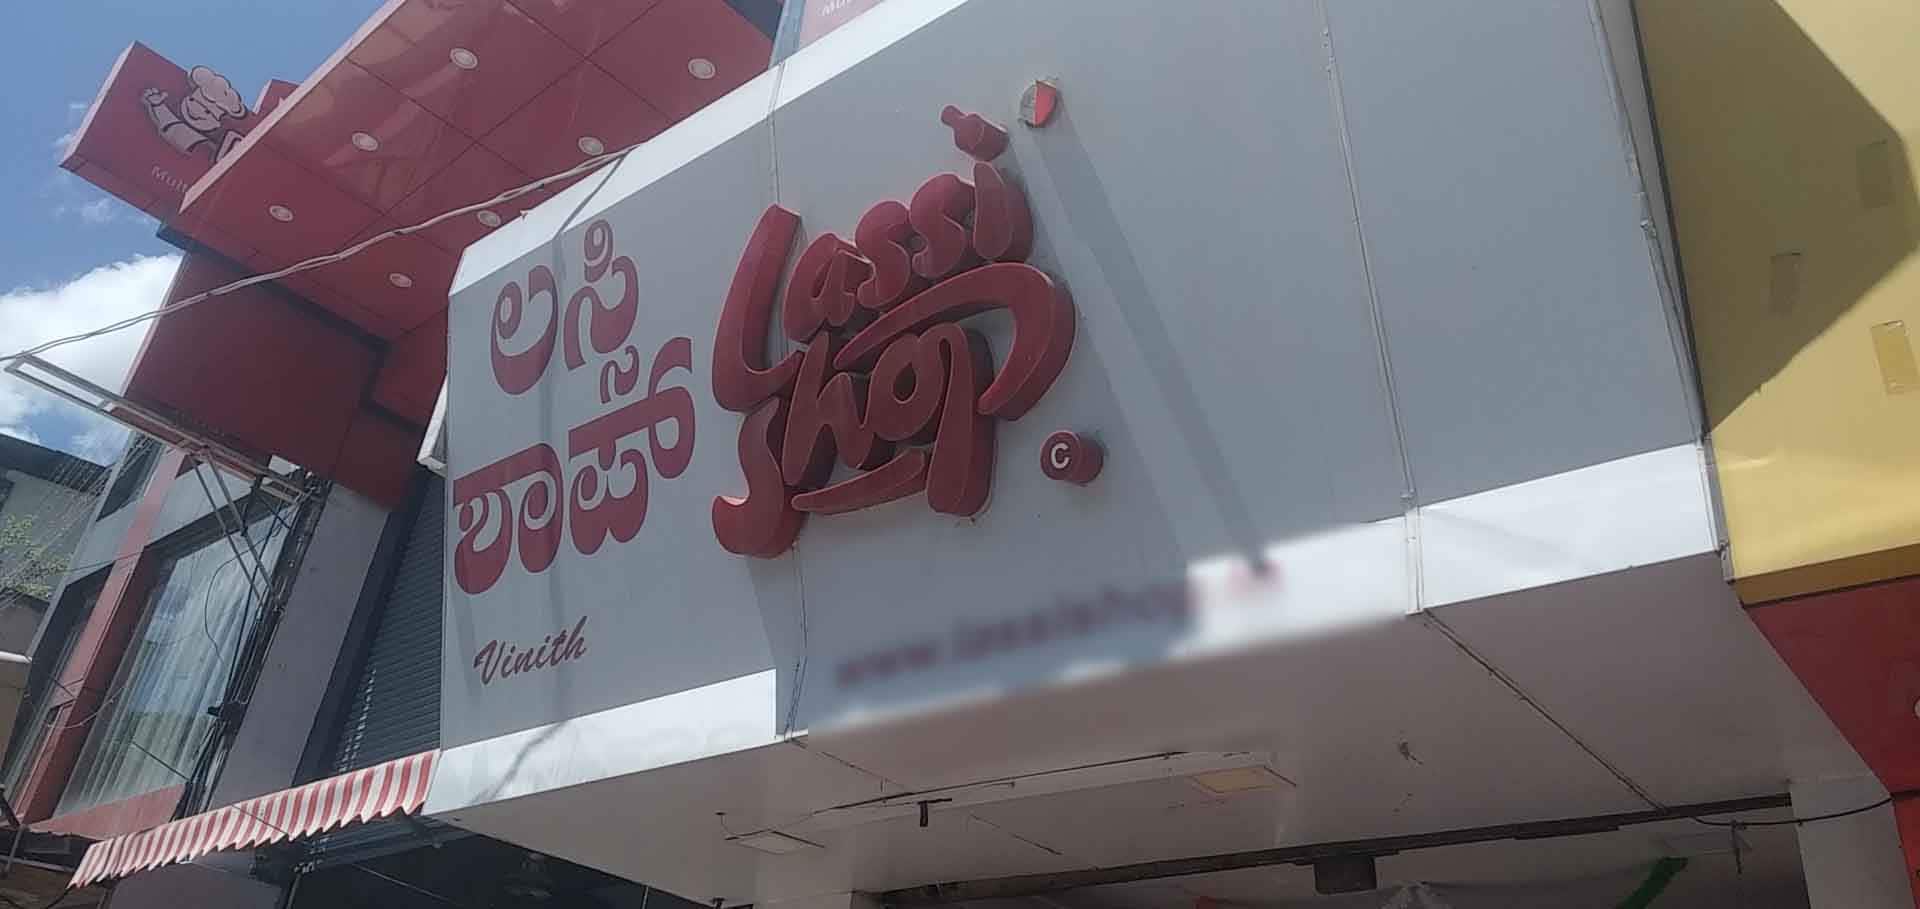 Sreeraj Lassi Bar - Best Lassi shop in Bengaluru